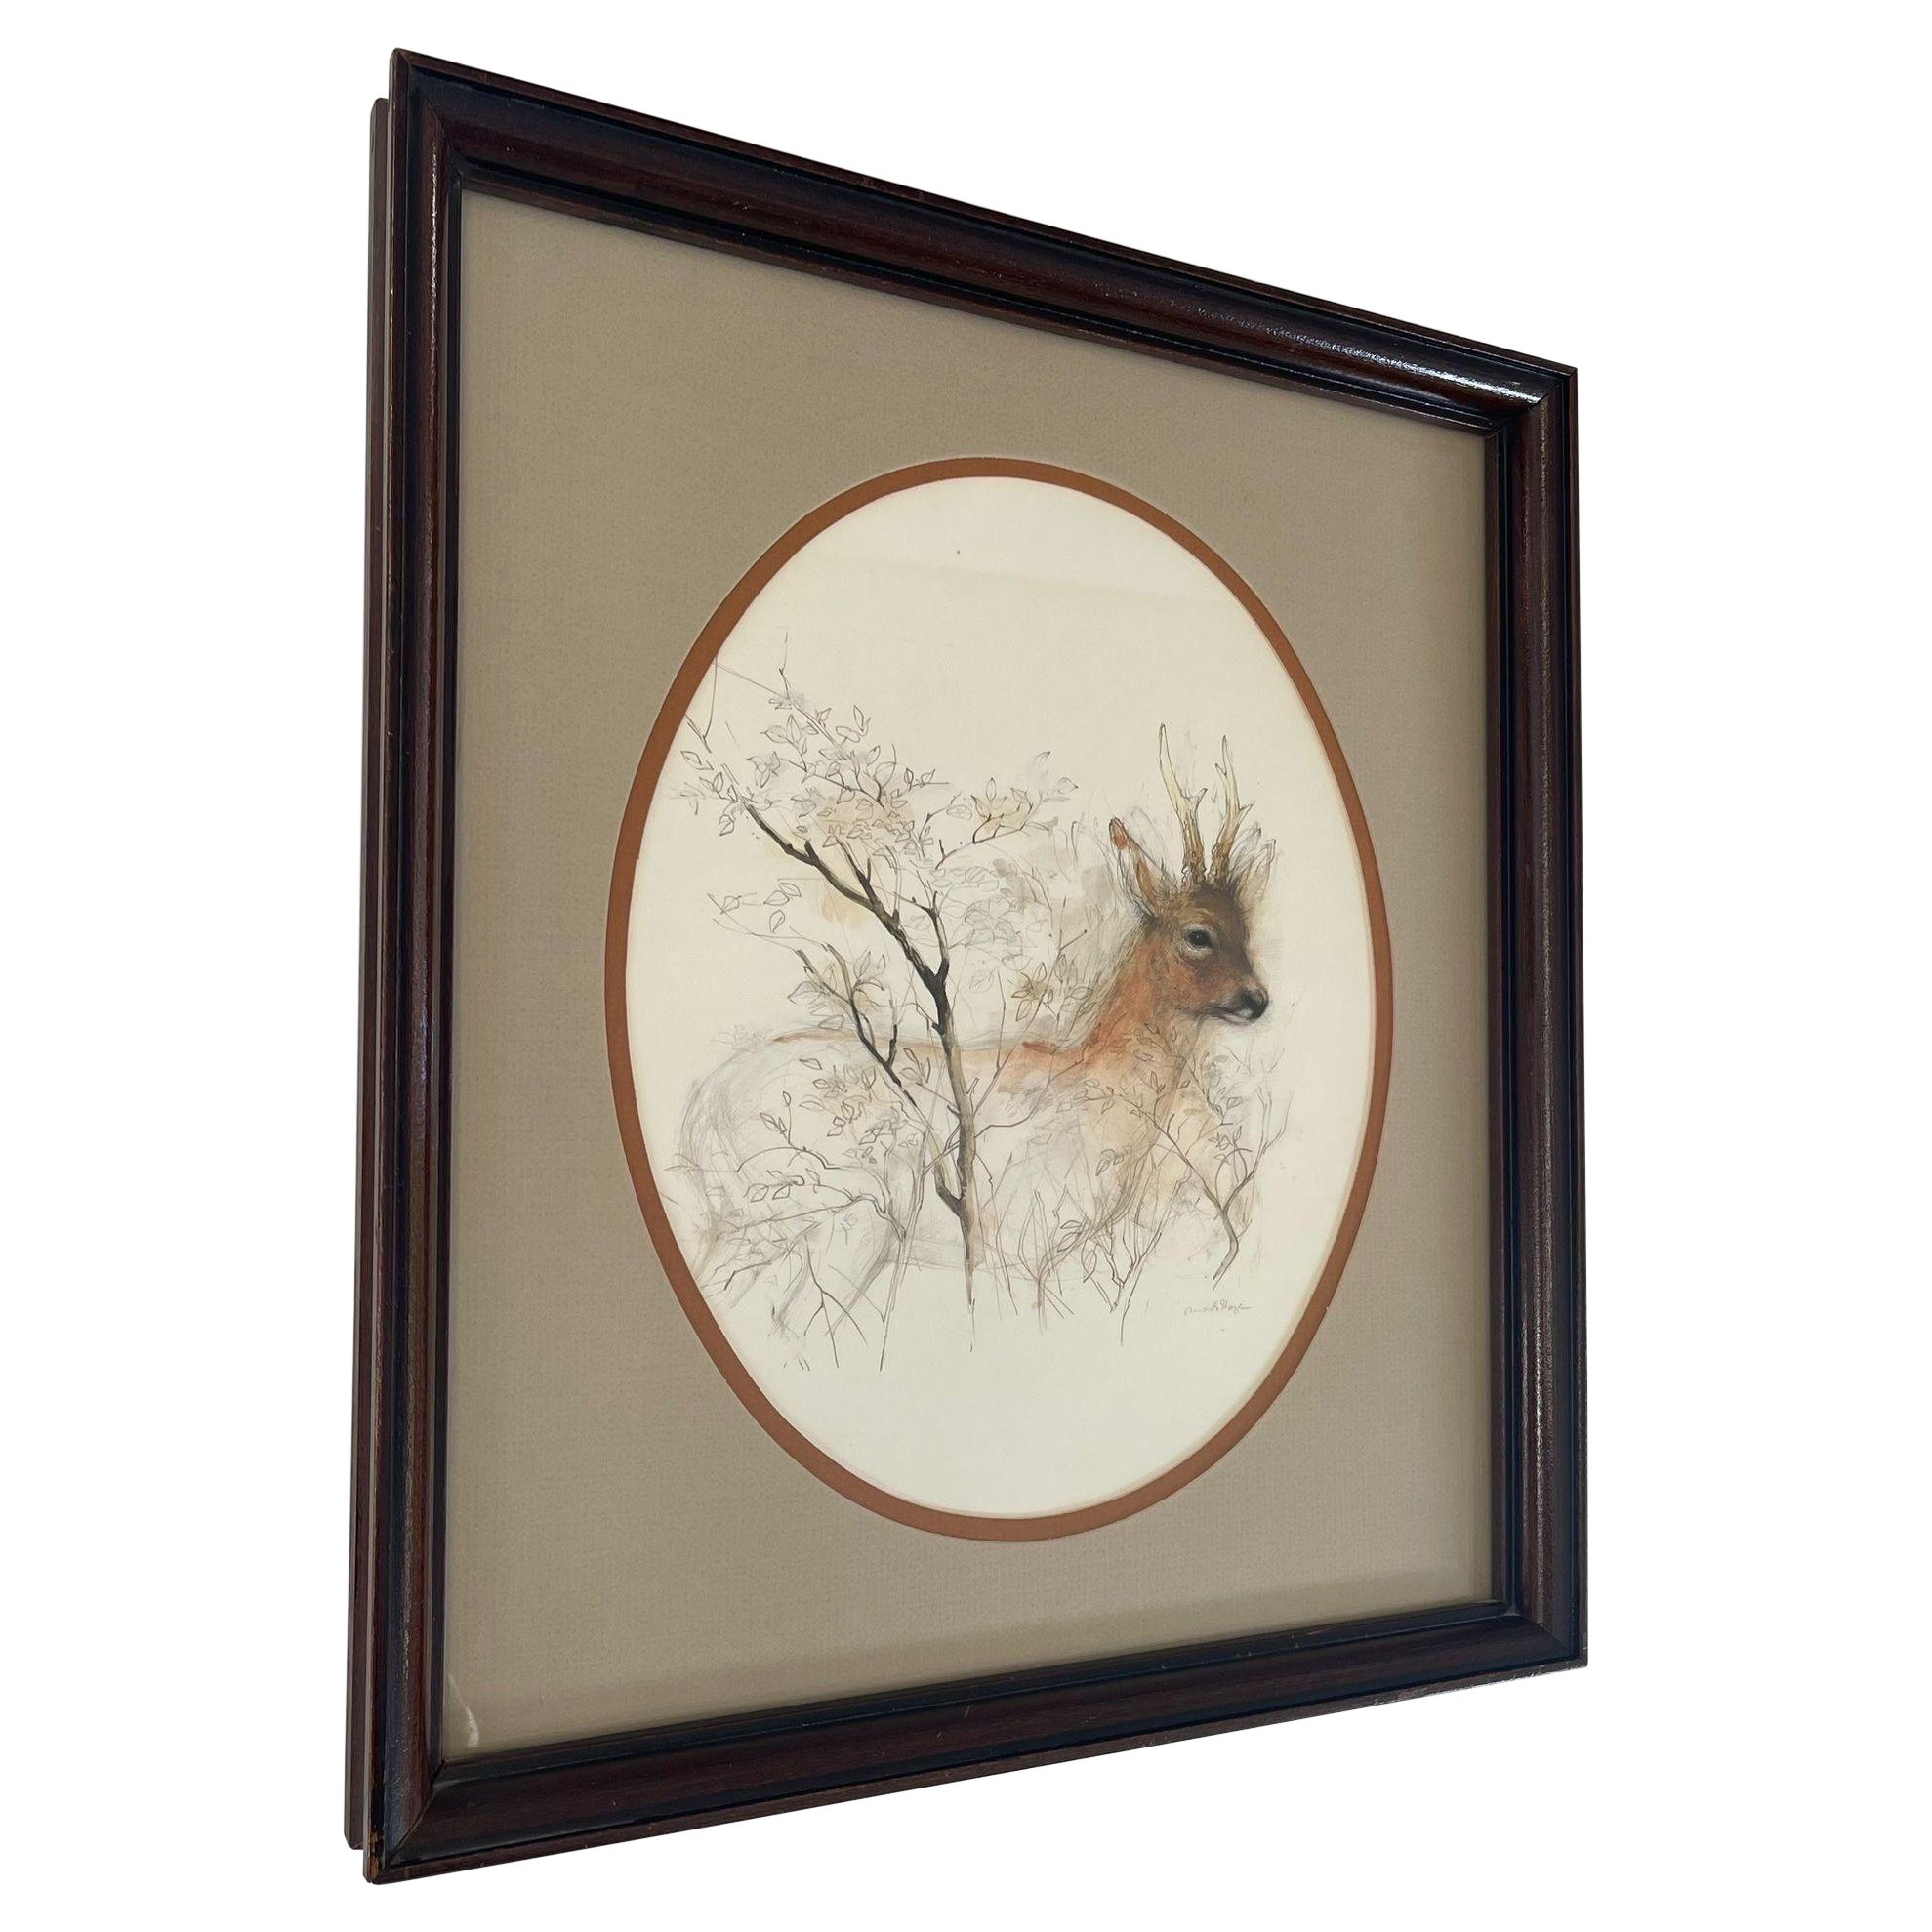 Vintage Original Wood Framed and Signed Deer and Tree Artwork